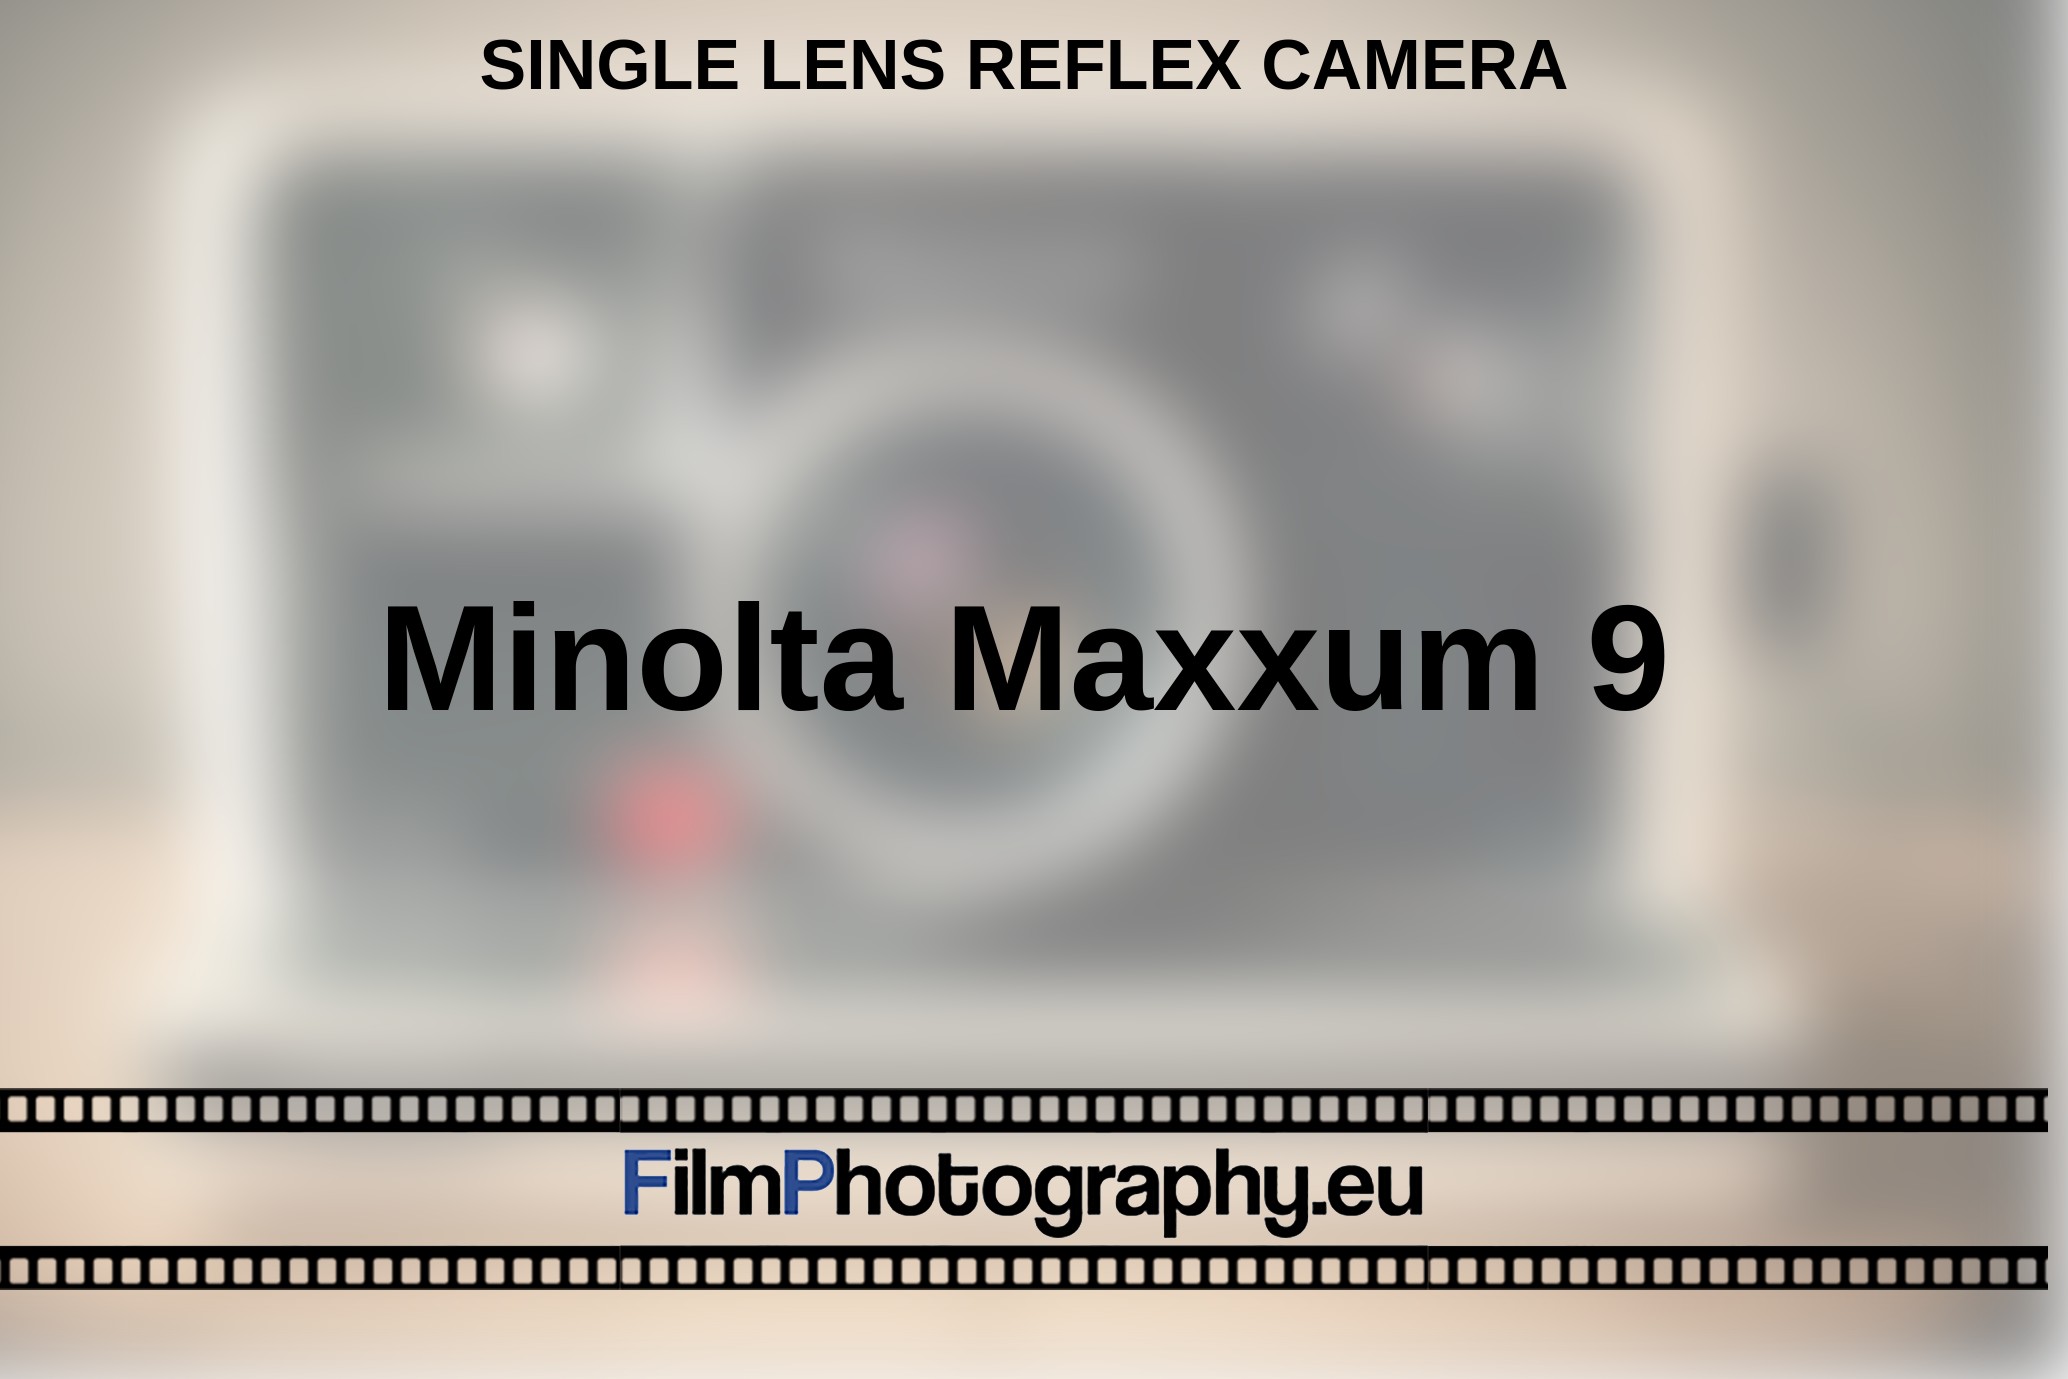 Minolta-Maxxum-9-single-lens-reflex-camera-bnv.jpg